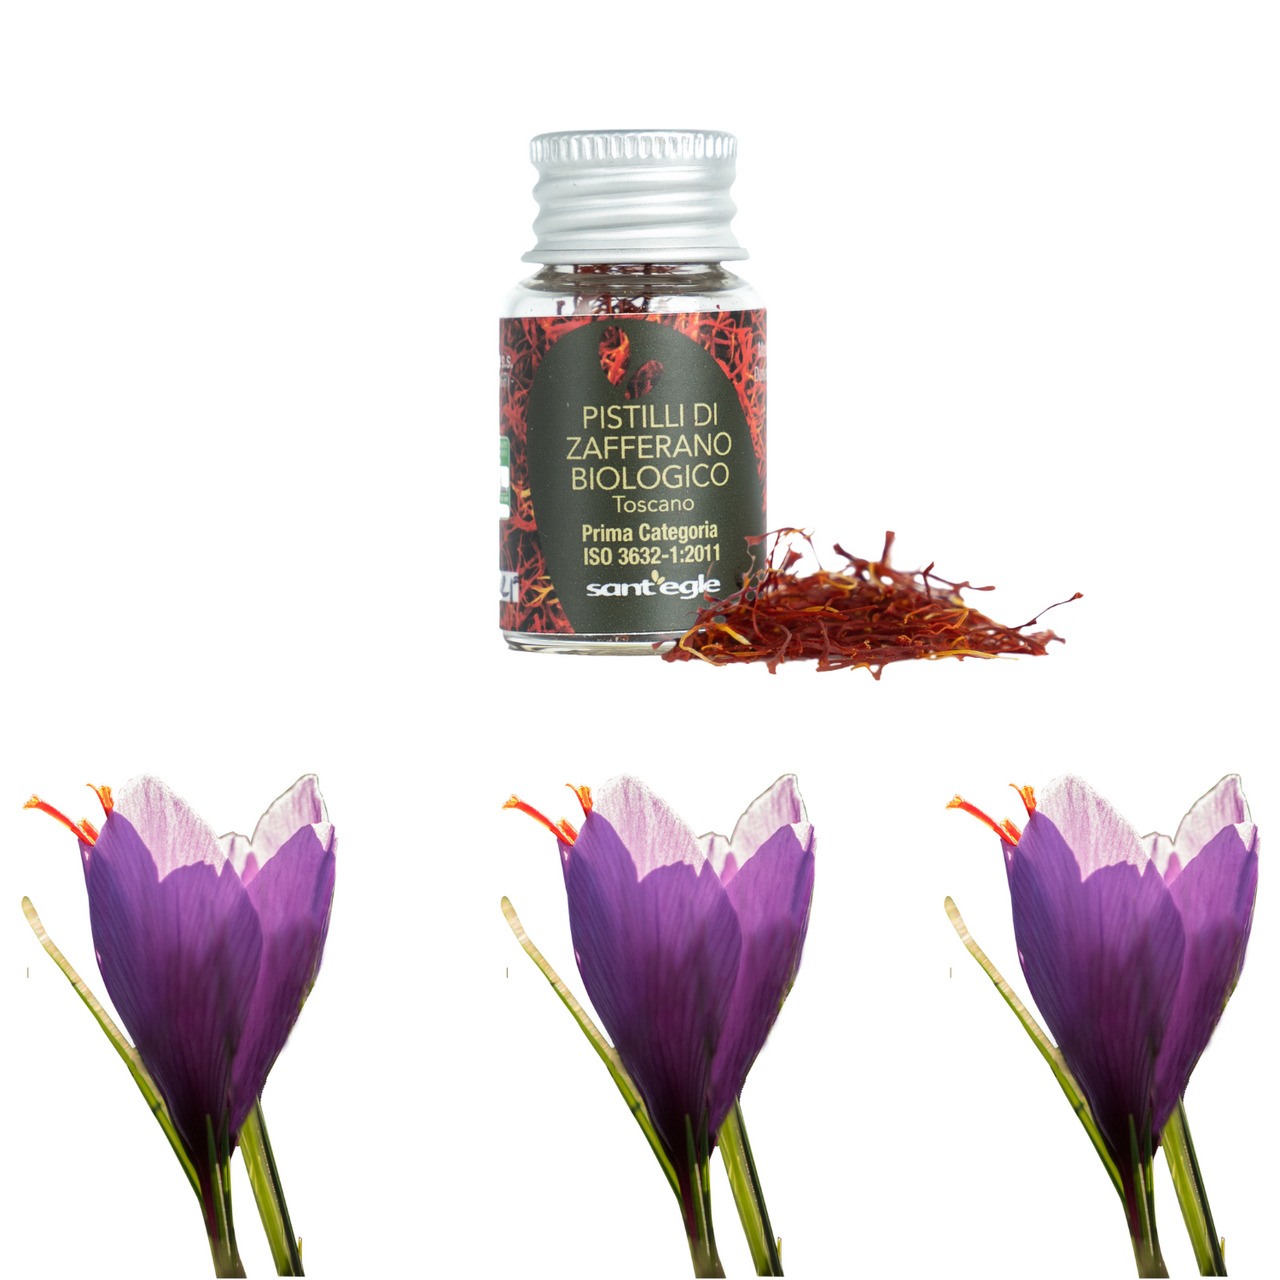 Organic saffron pistils, trial format + €5 discount voucher for your next purchase